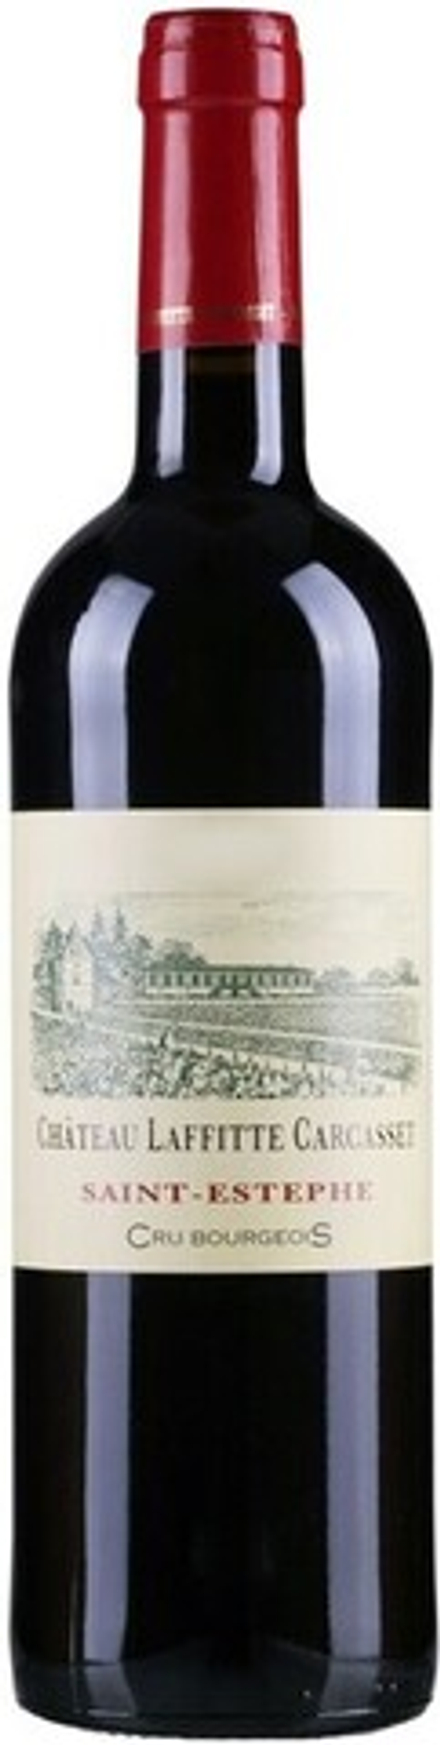 Вино Chateau Laffitte-Carcasset Saint-Estephe AOC, 0,75 л.